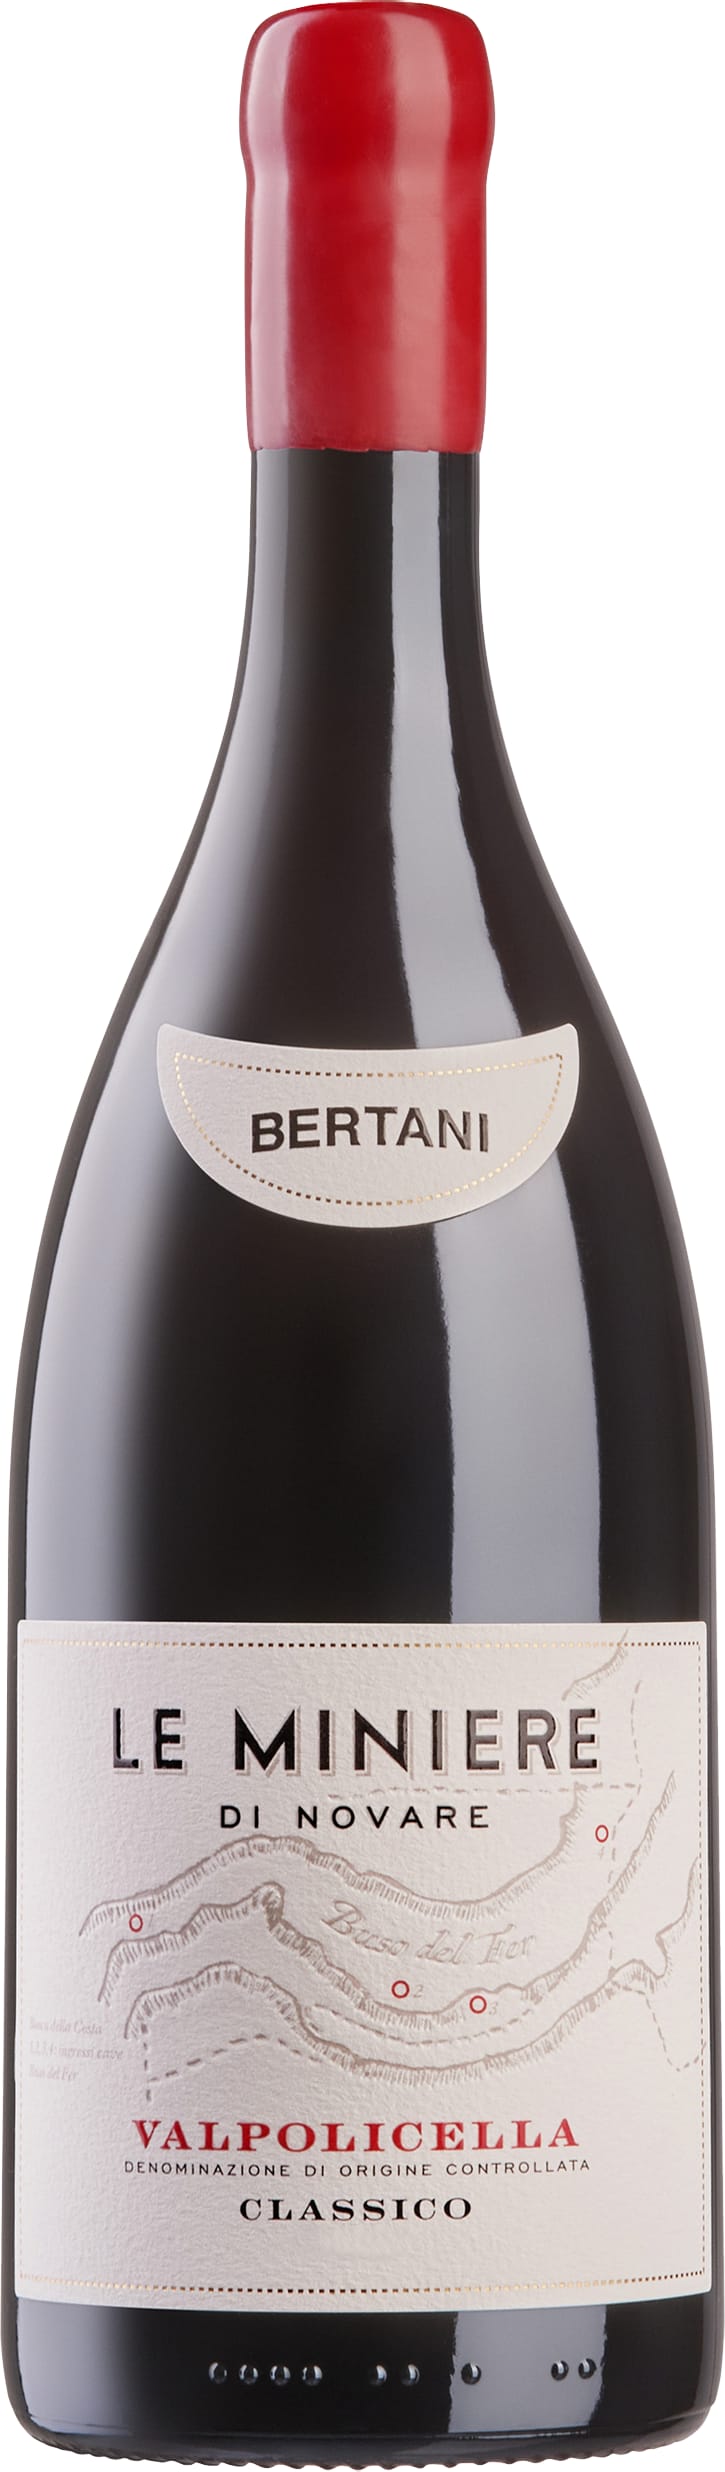 Bertani Valpolicella Classico Le Miniere di Novare 2020 75cl - Buy Bertani Wines from GREAT WINES DIRECT wine shop